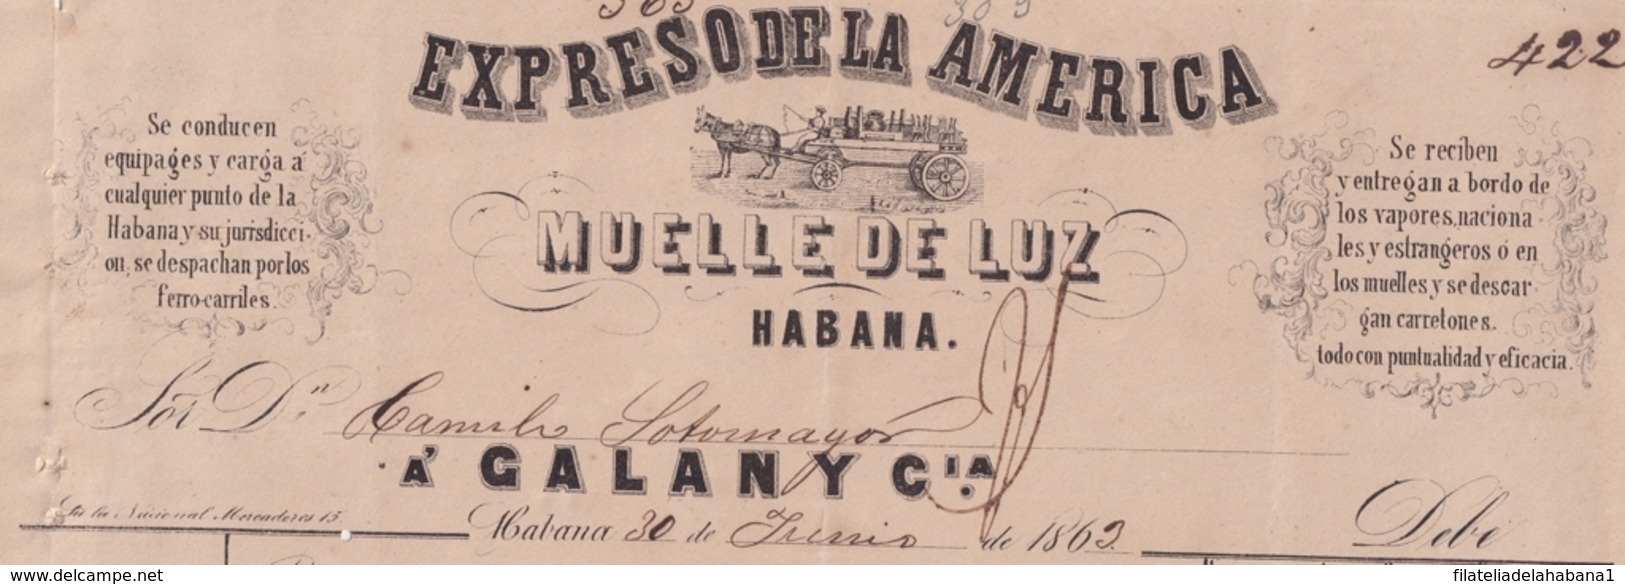 E6376 CUBA SPAIN 1863 TRANSPORT TO ARRATIA SUGAR MILLS ENGRAVING INVOICE EXPRESO DE LA AMERICA. - Manuscripts